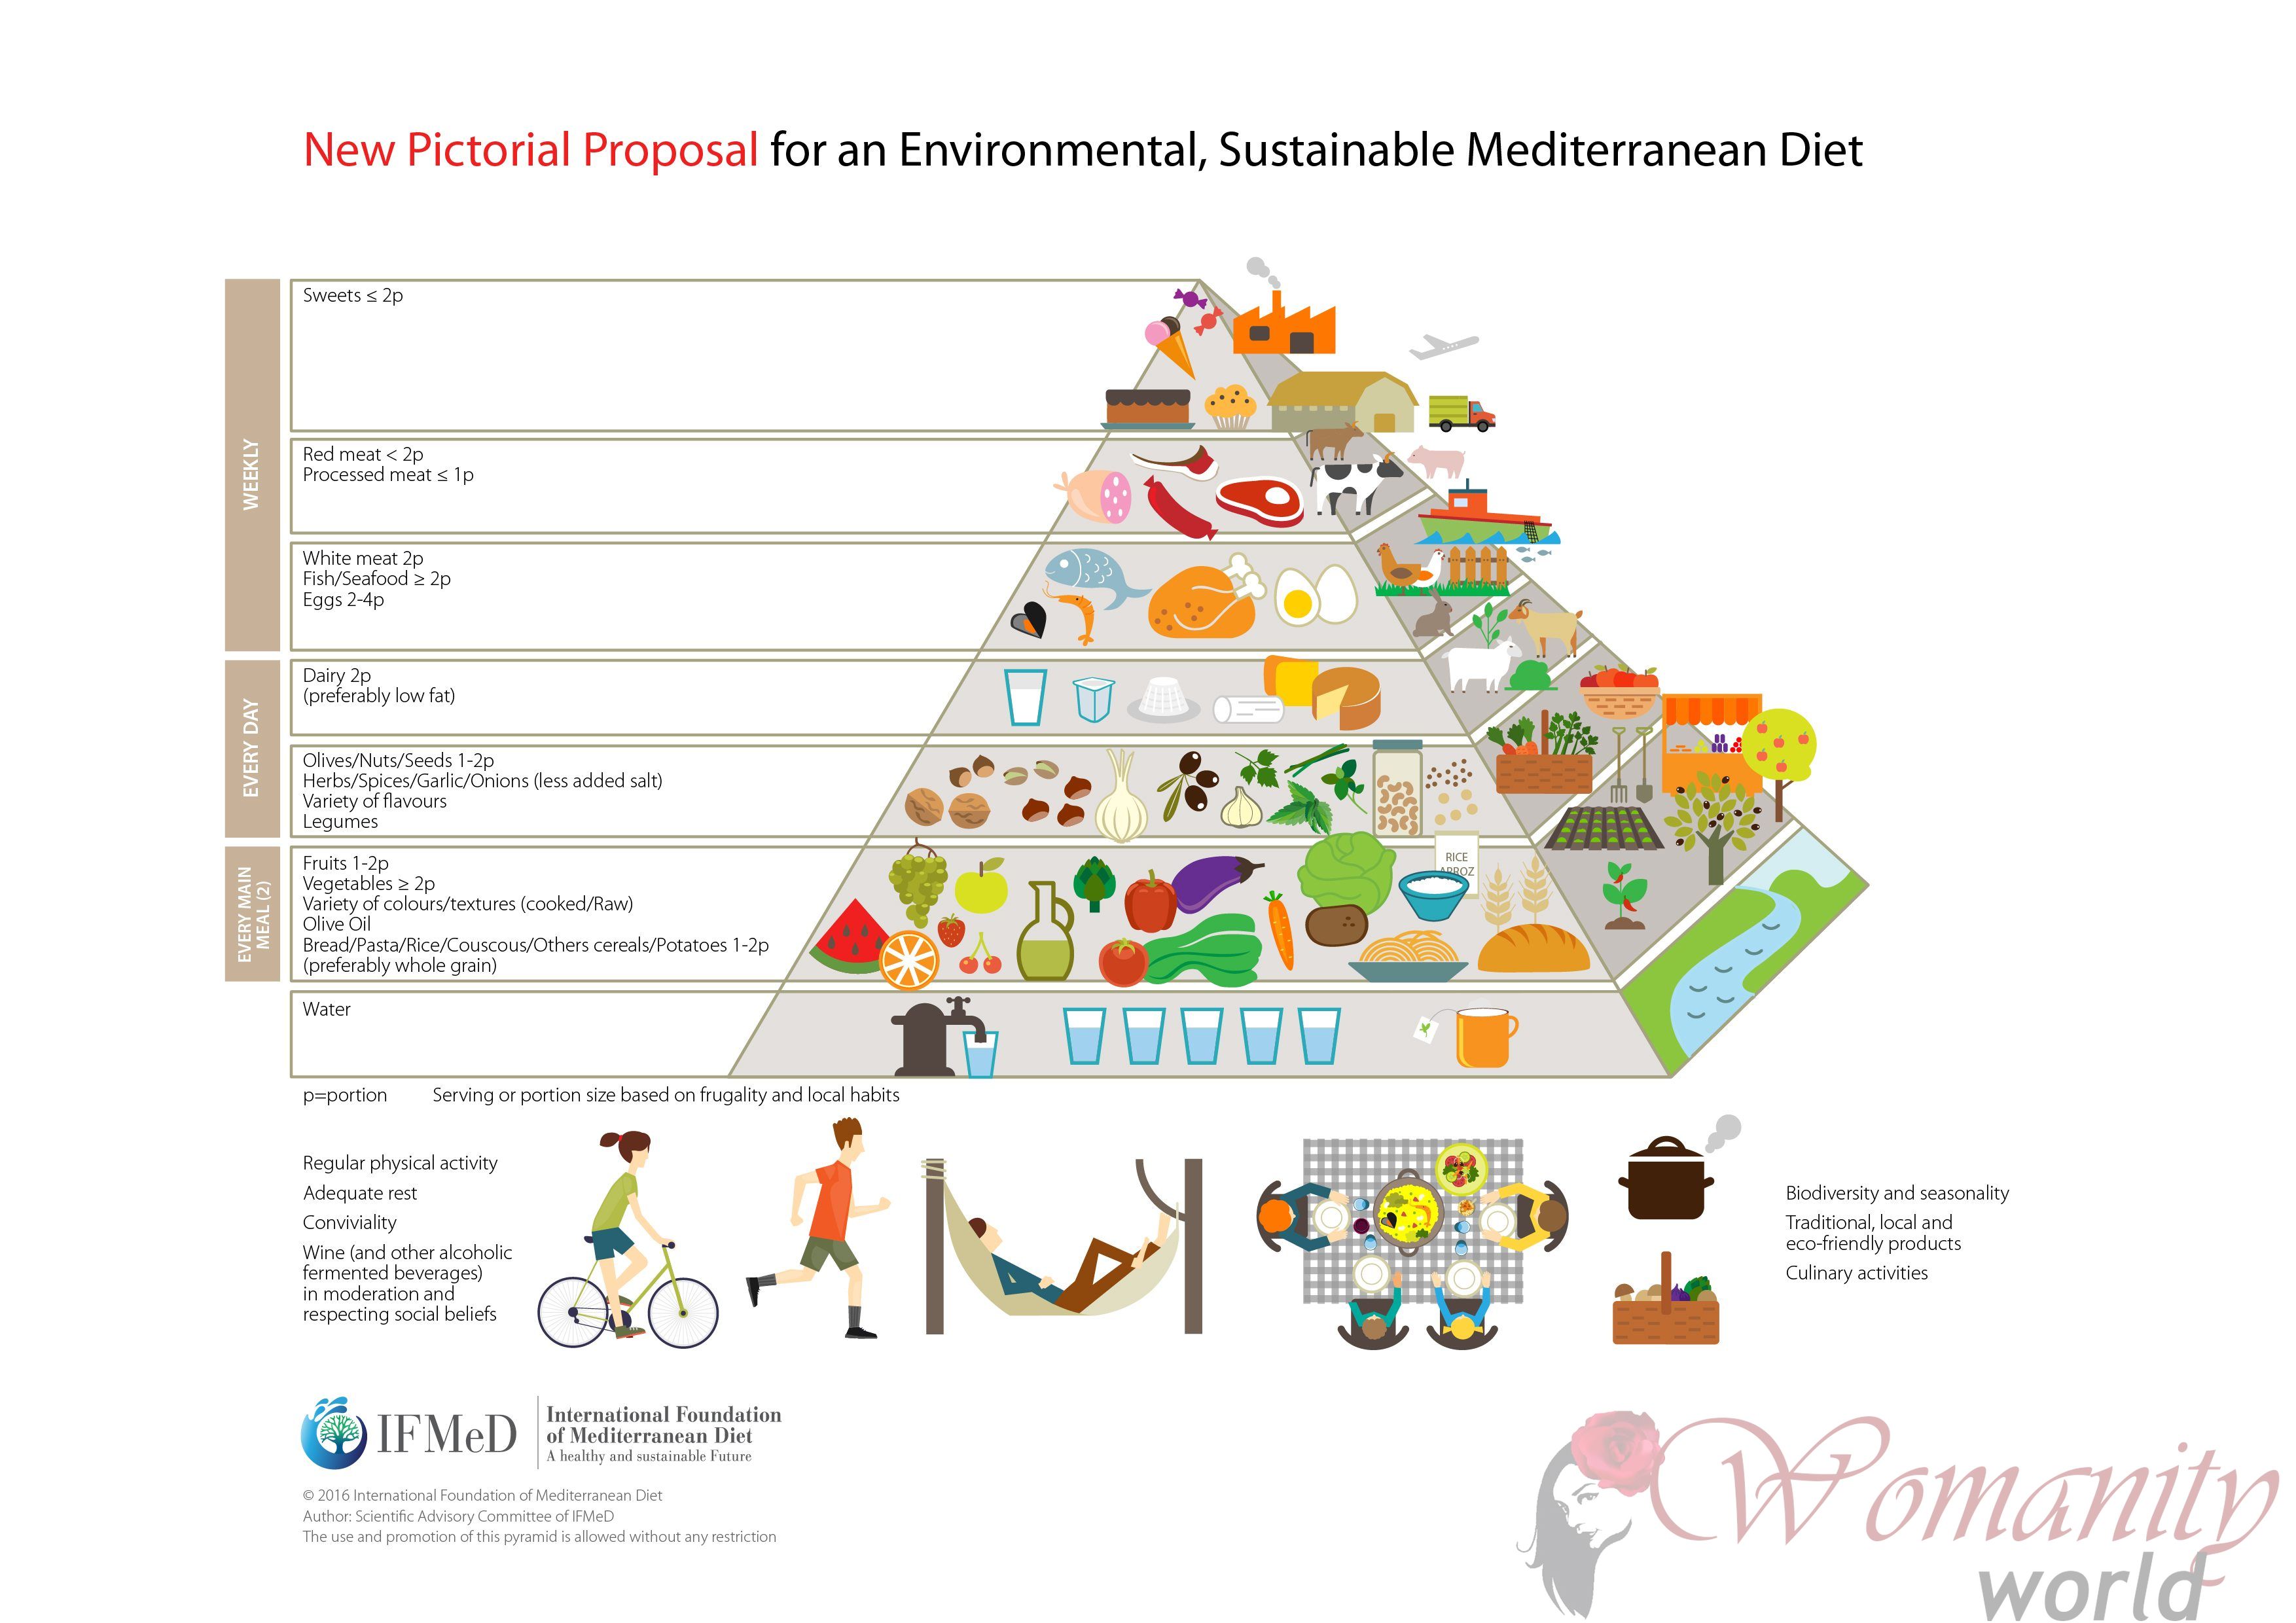 Alimentare sostenibile, nucleo della nuova piramide dieta mediterranea